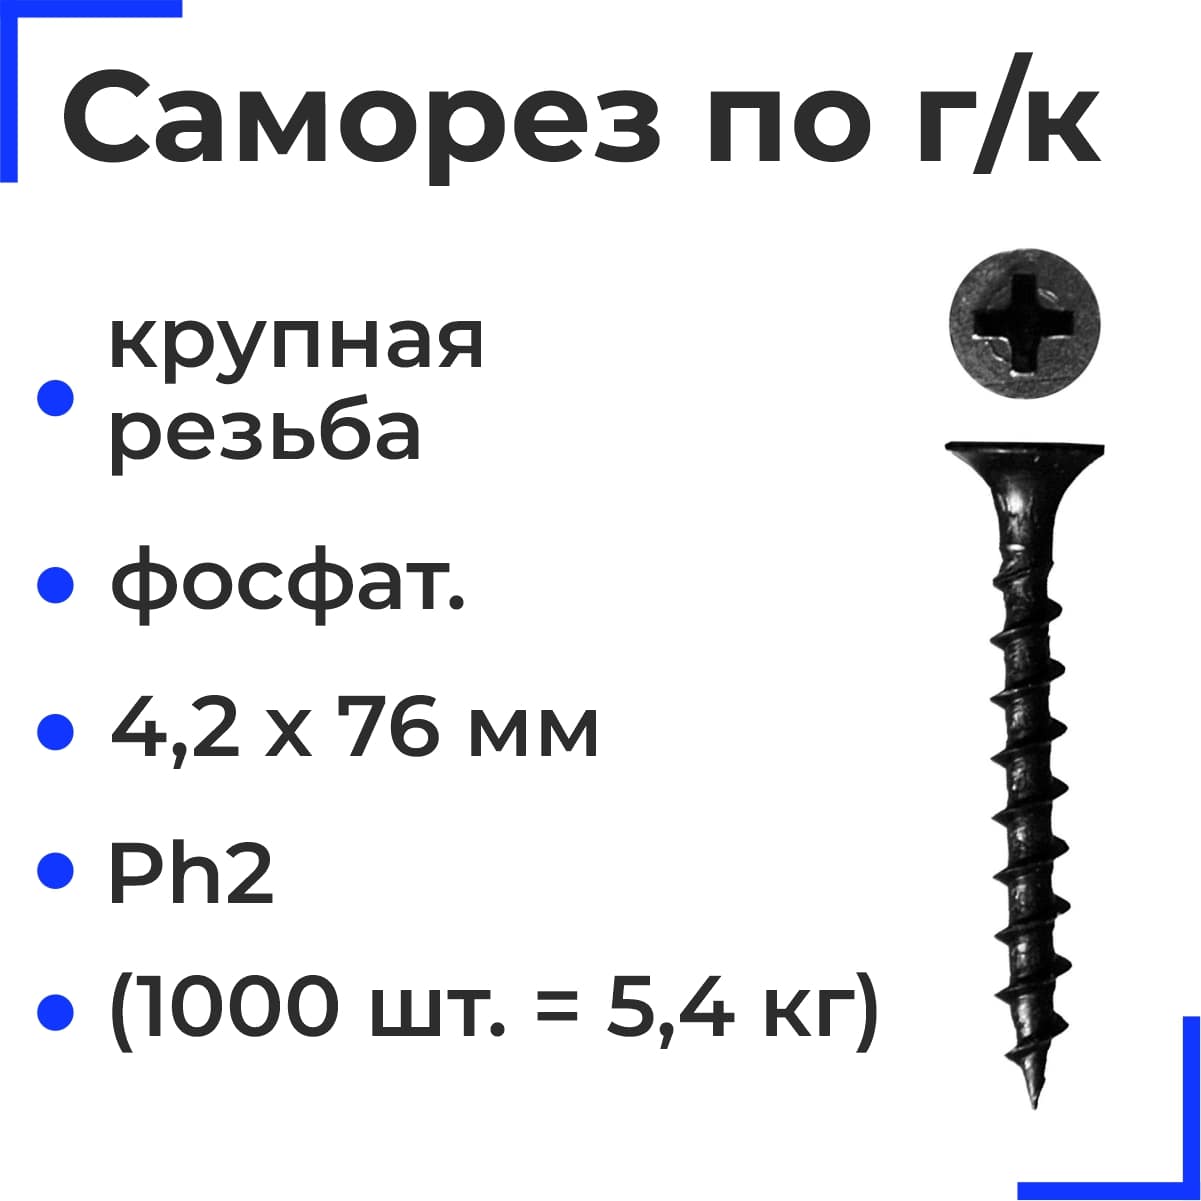 Саморез по г/к крупная резьба фосфат. 4,2х76 НЛМК Ph2 (1000шт = 5,4кг)